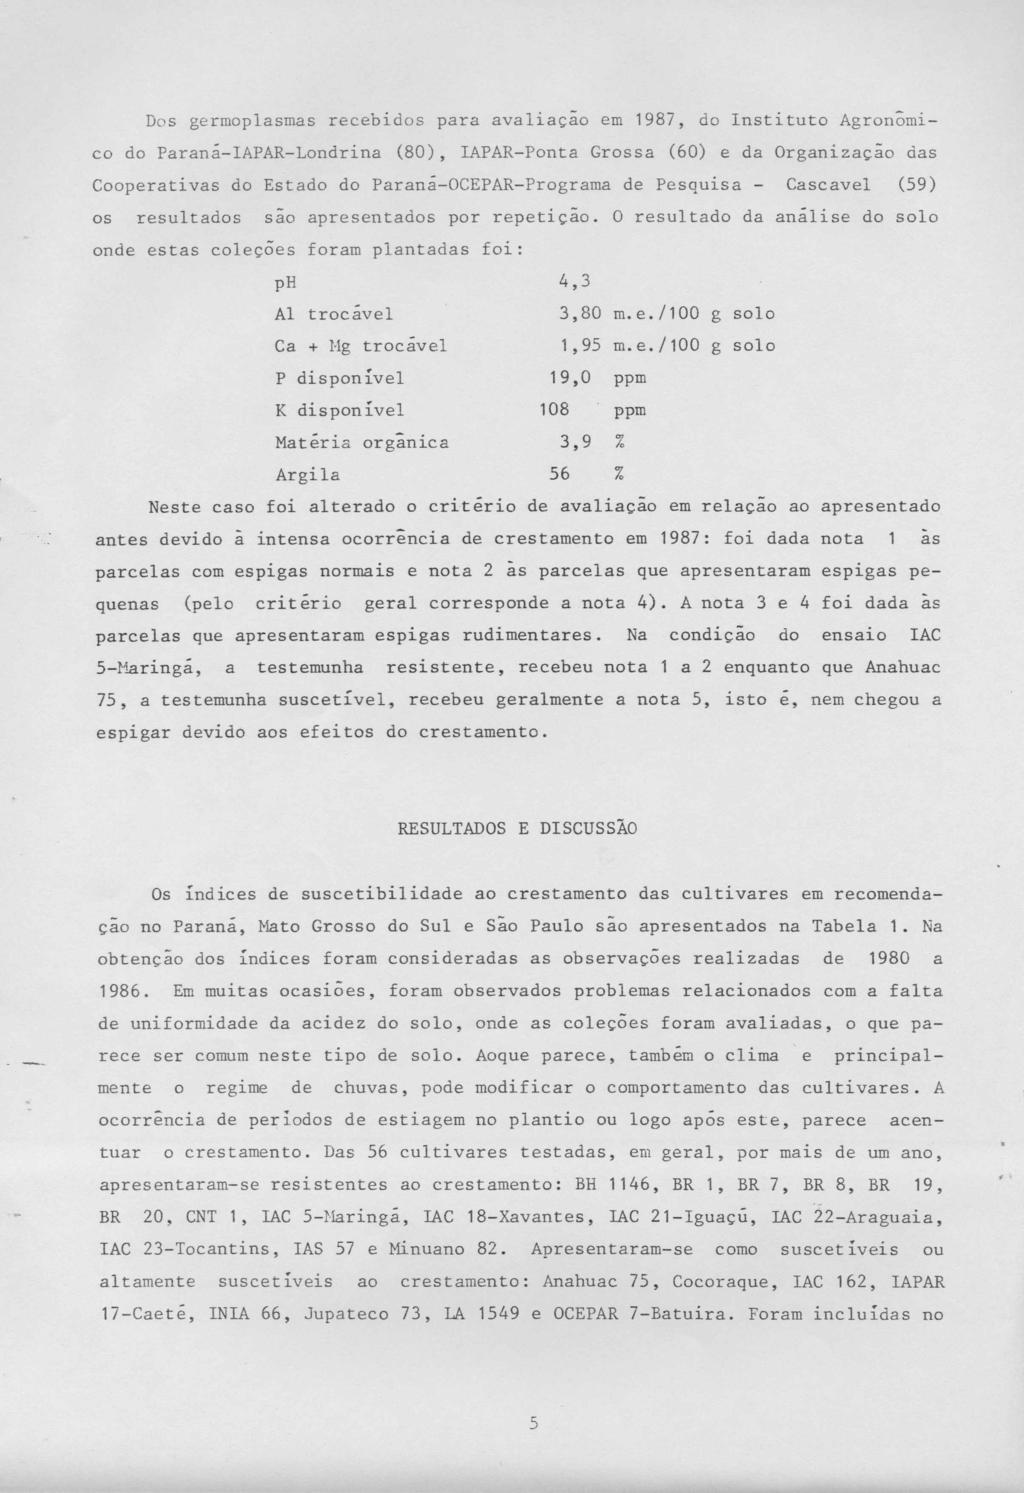 Dos germoplasmas recebidos para avaliação em 1987, do Instituto Agronômico do Paraná-IAPA-Londrina (80), IAPA-Ponta Grossa (60) e da Organização das Cooperativas do Estado do Paraná-OCEPA-Programa de